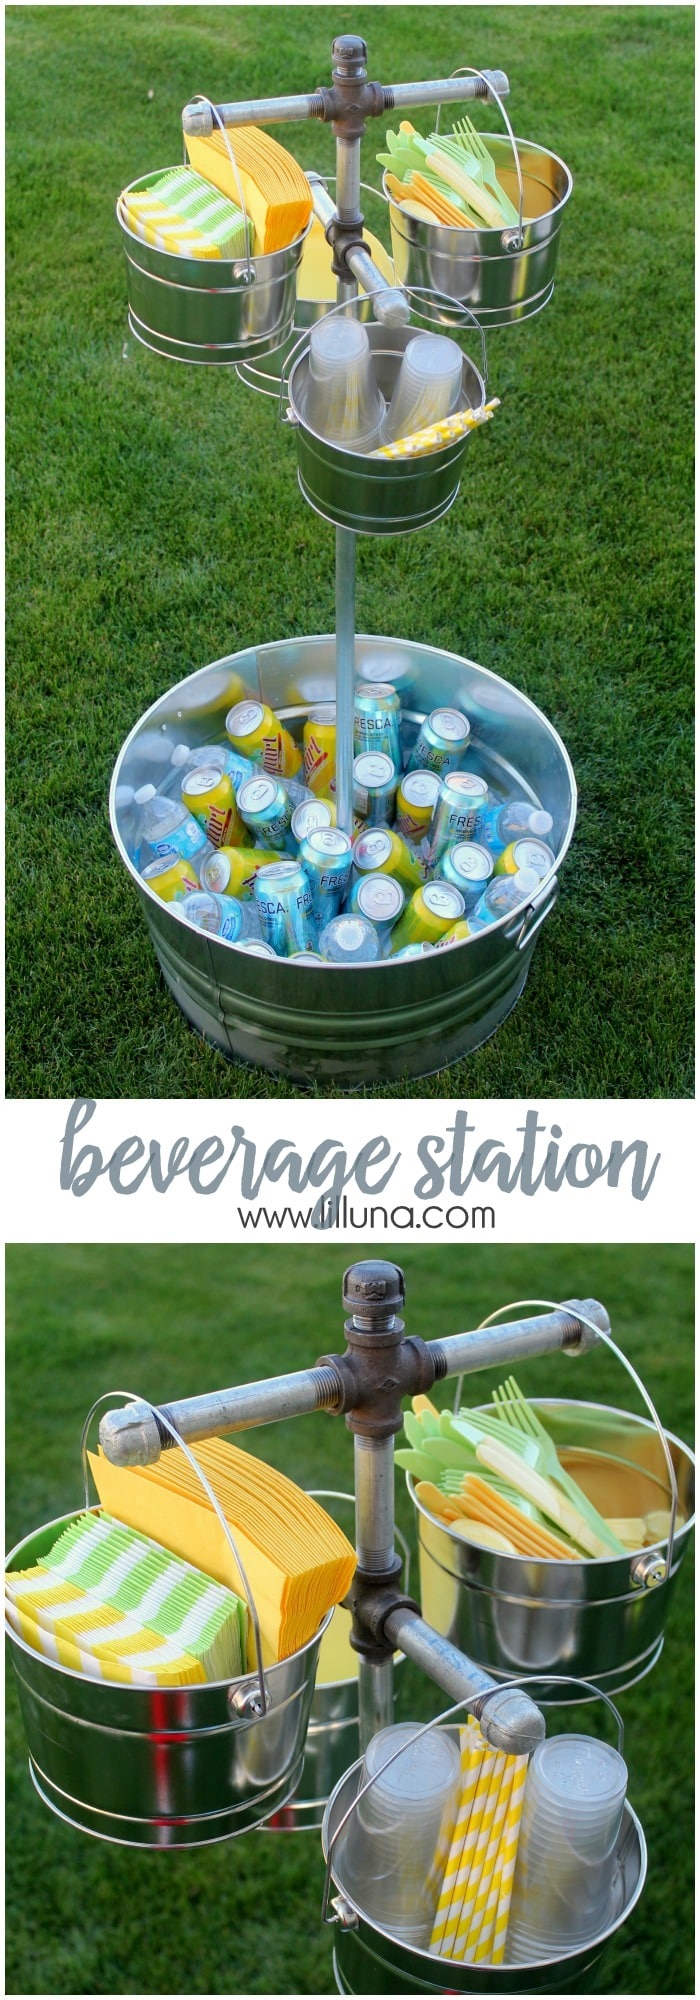 beverage-station-collage